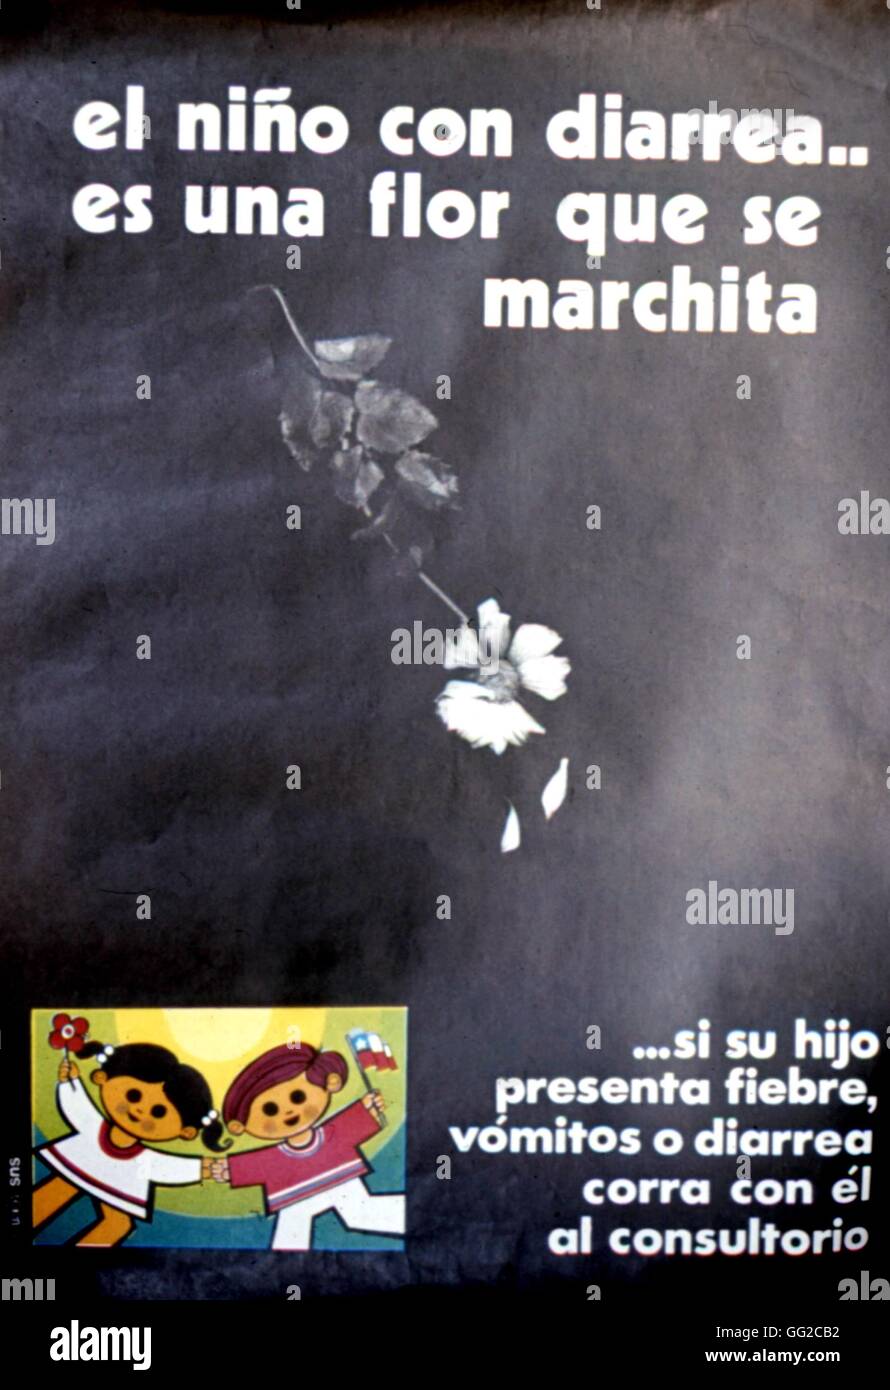 Affiche publicitaire pour l'amélioration de la santé, délivré en vertu de la gouvernement Allende : 'un enfant souffrant de diarrhée, c'est comme une fleur whitered' c.1971/1972 Chili C.S.L.R.P.C. Banque D'Images